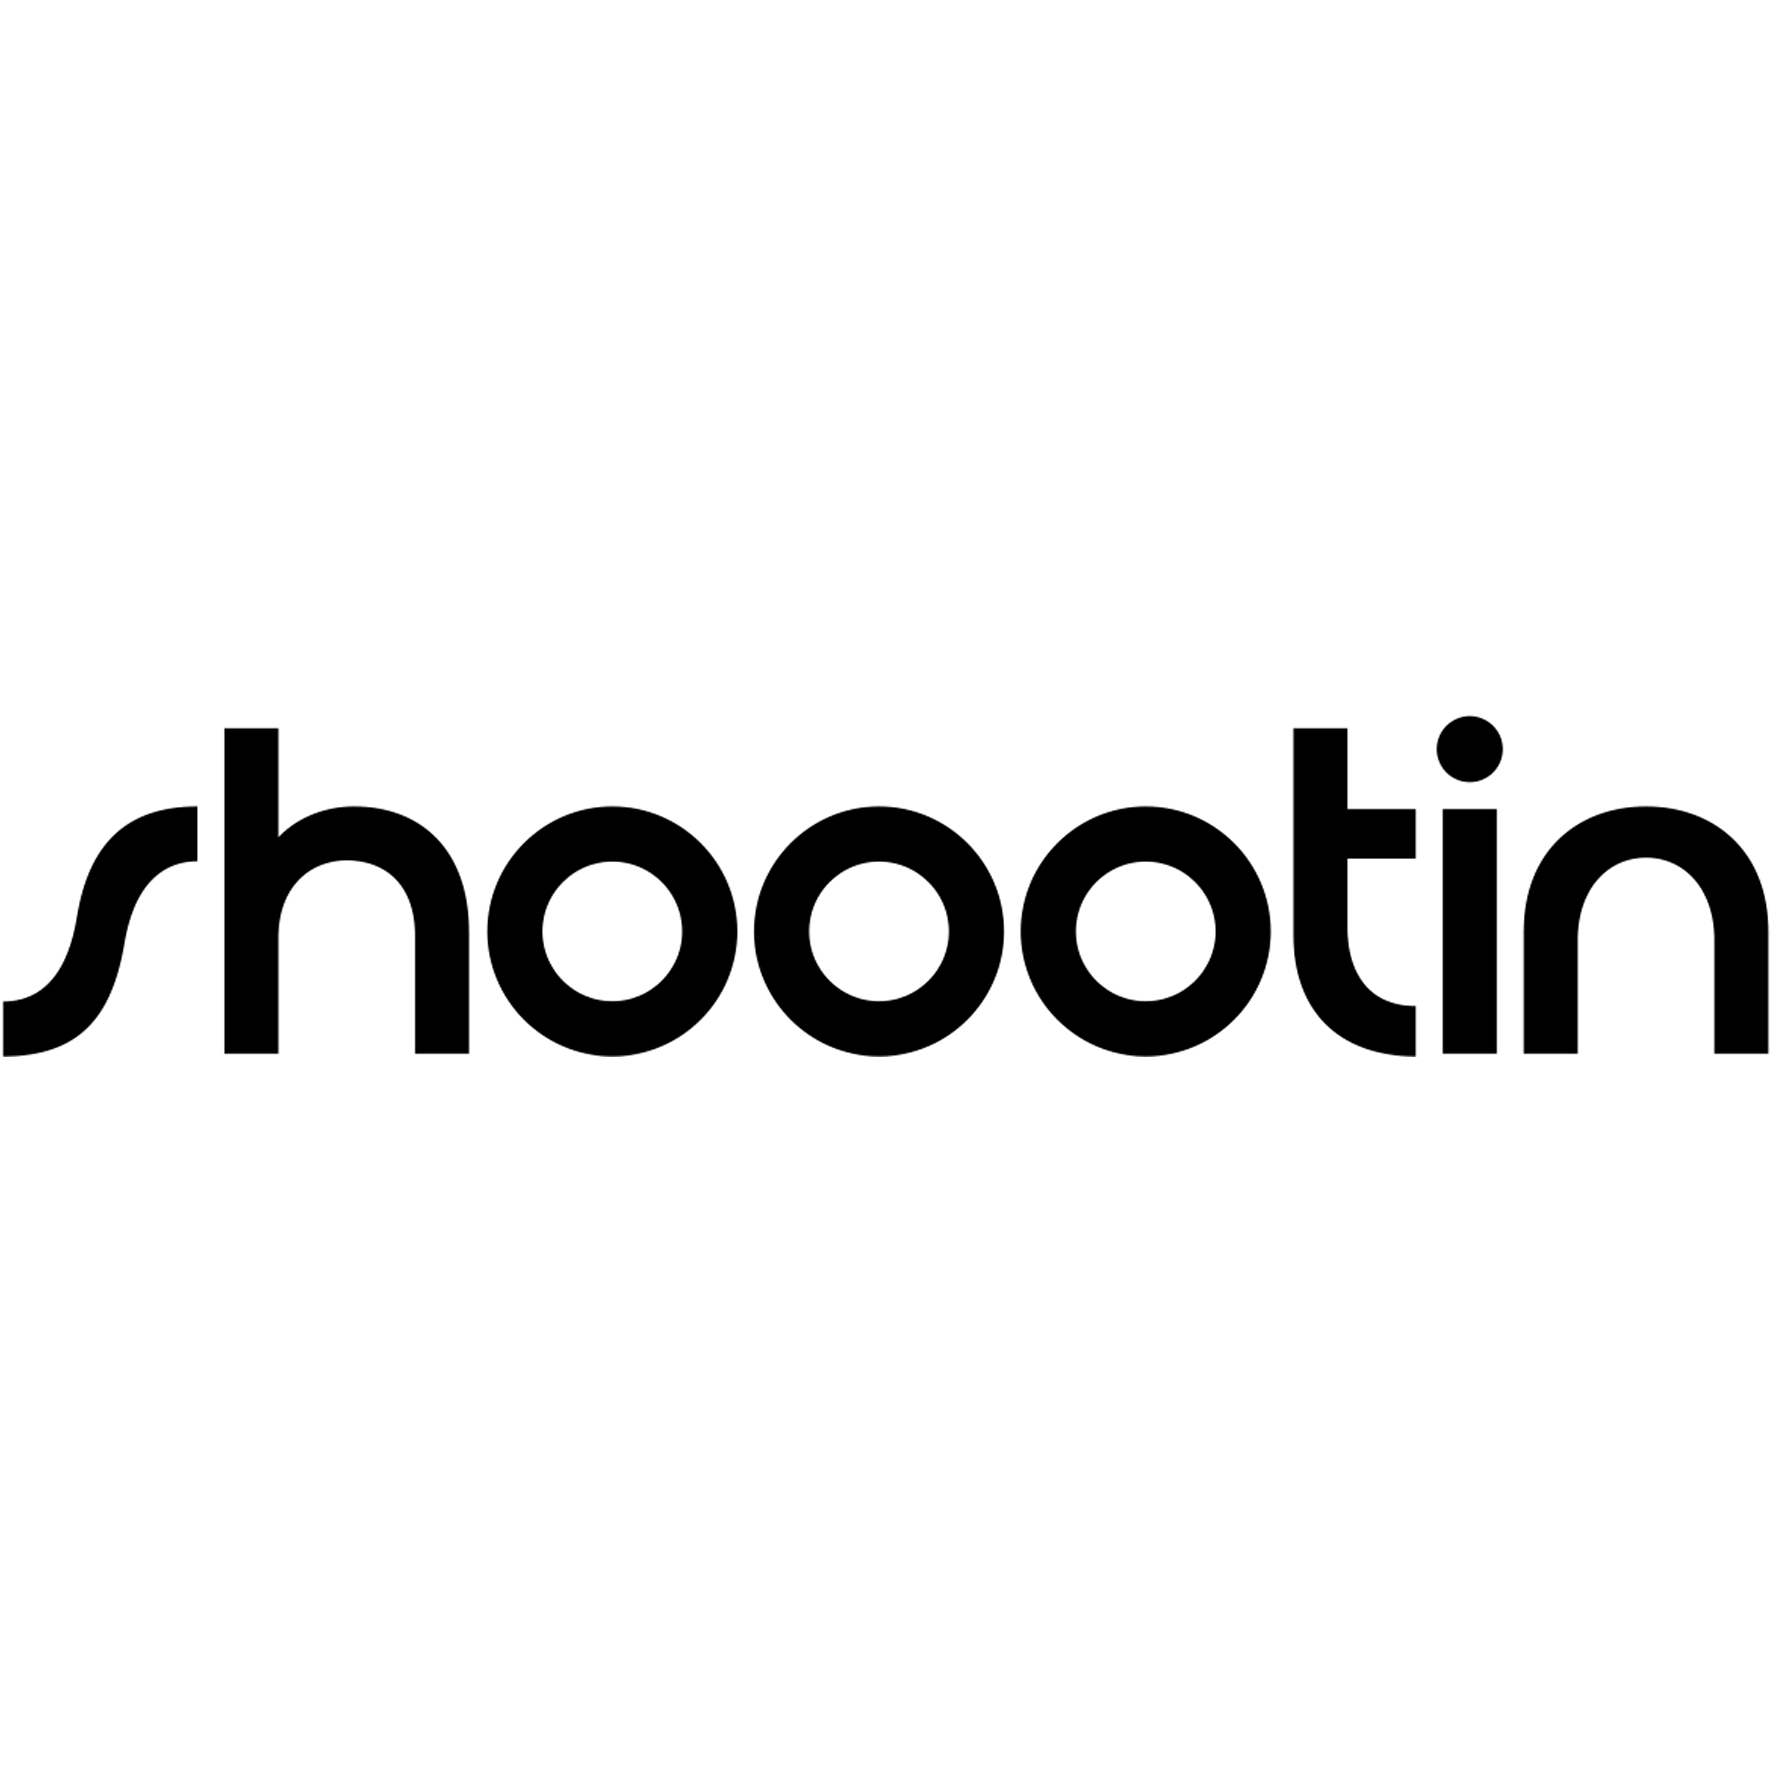 Shoootin Logo